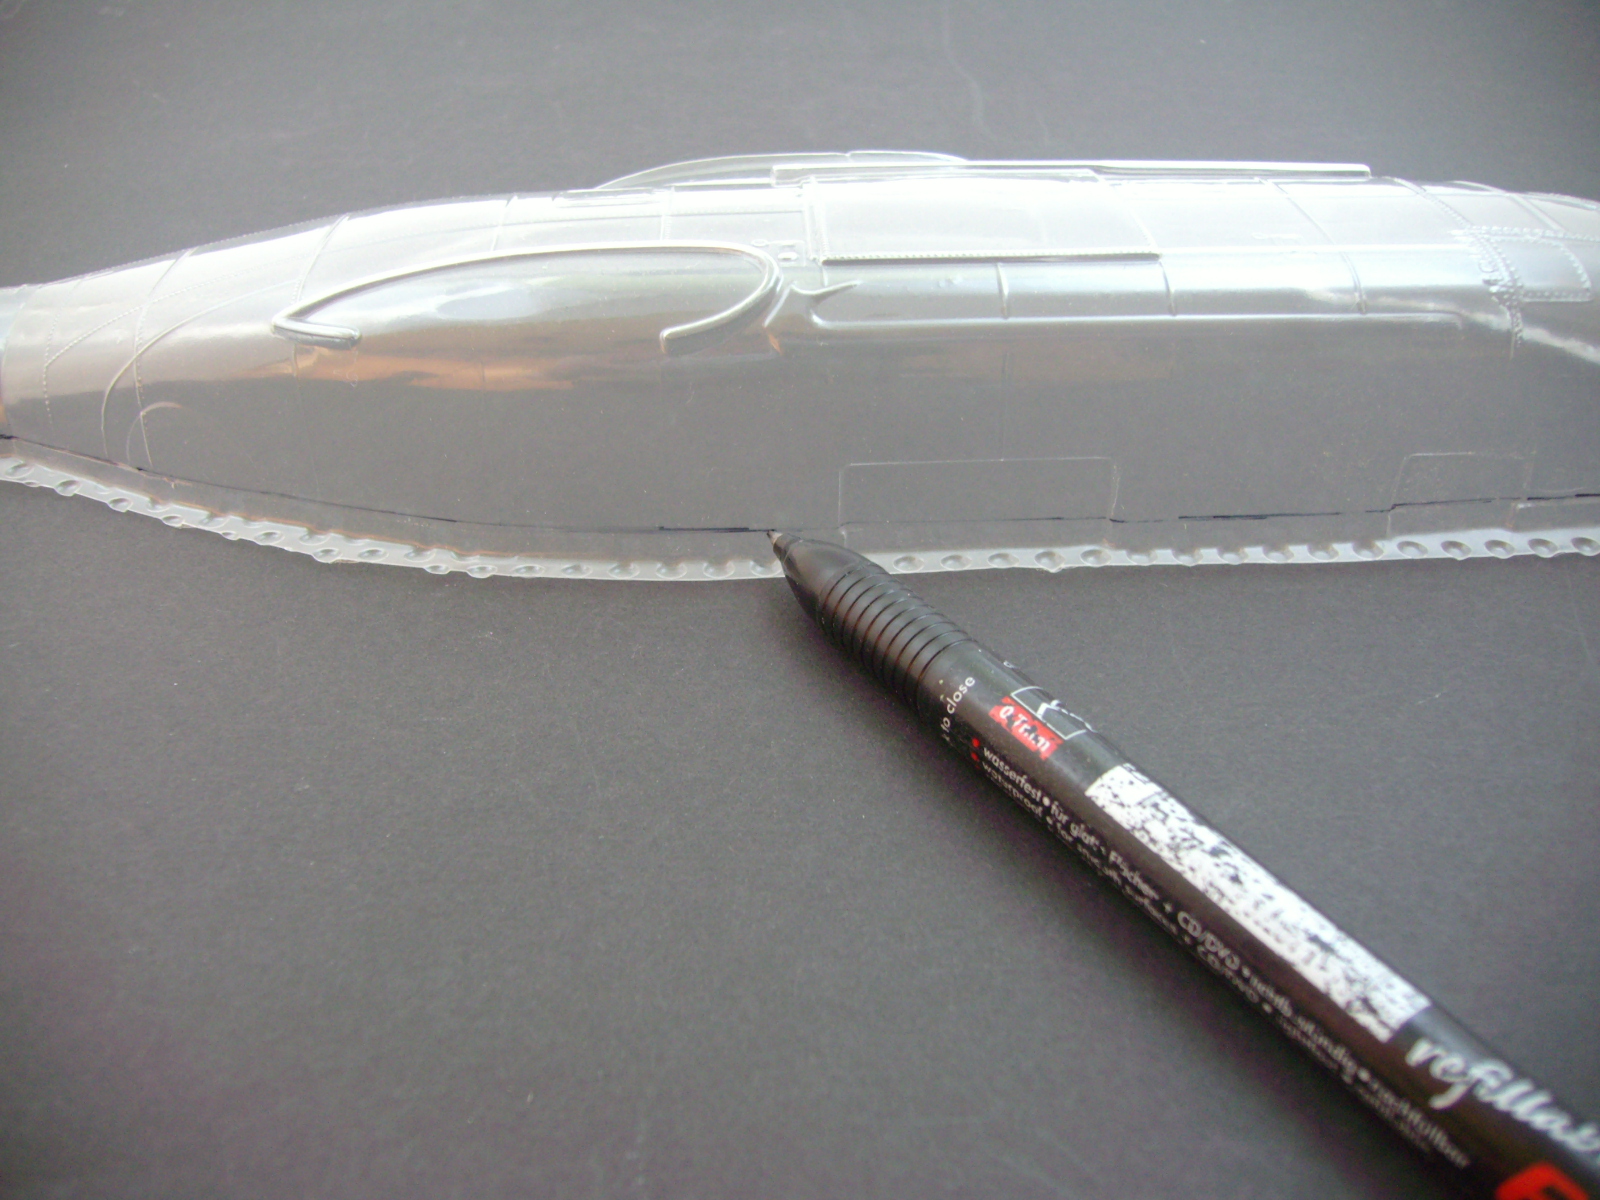 Bild 05: Die Rumpfhälfte wird auf eine glatte Fläche aufgelegt und mit einem wasserfesten Stift ringsum eine Linie gezogen. Tiefziehteile habe meist unten drunter eine Distanzschicht, damit das Teil glatt enden kann und nicht rund.